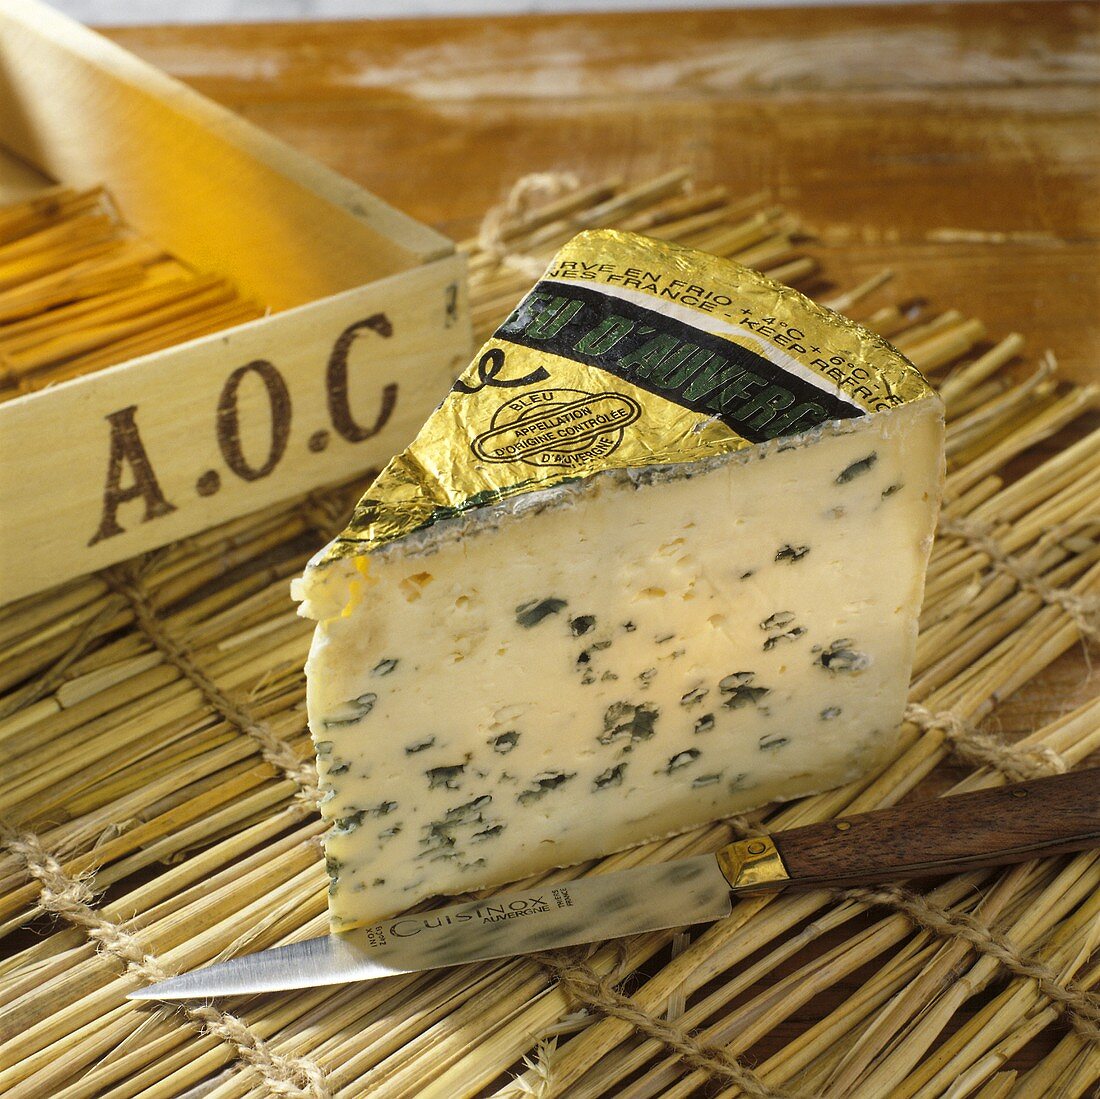 A piece of Bleu d'Auvergne cheese